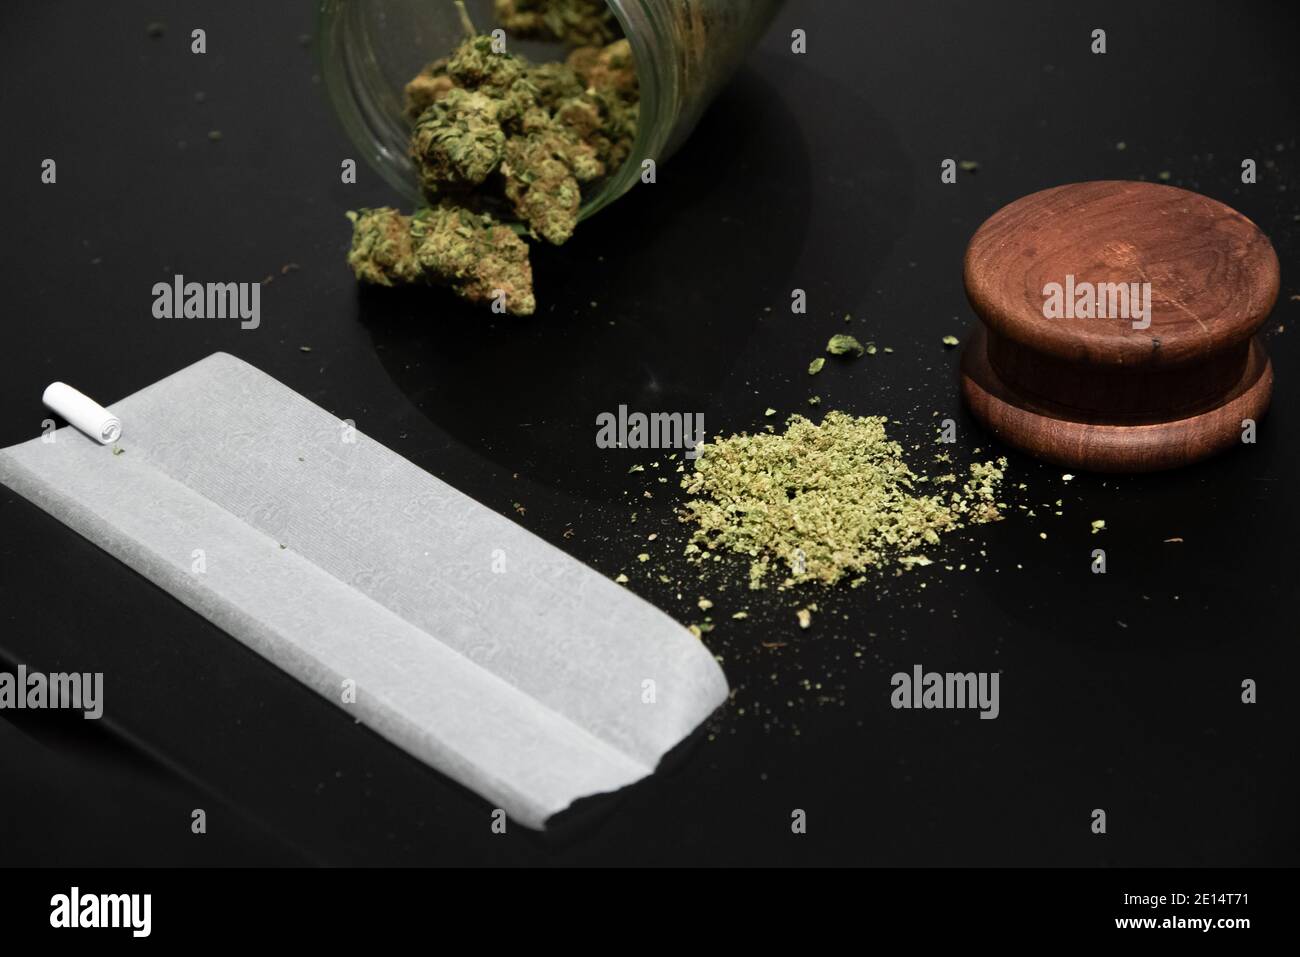 Cannabis buds, ground marijuana and other smoking utensils Stock Photo